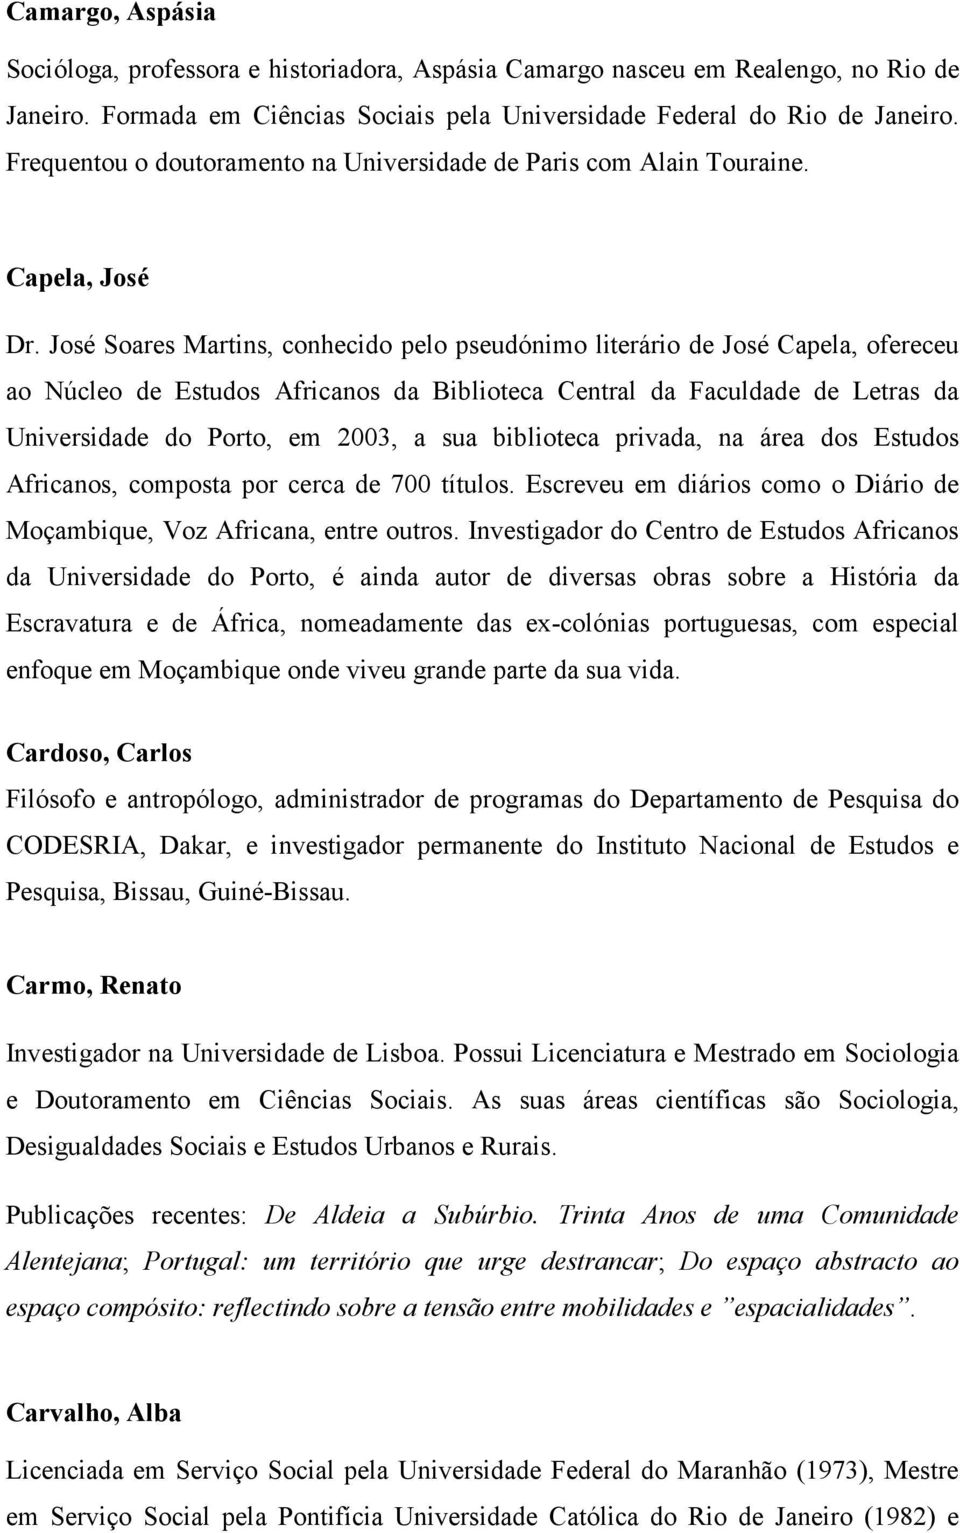 José Soares Martins, conhecido pelo pseudónimo literário de José Capela, ofereceu ao Núcleo de Estudos Africanos da Biblioteca Central da Faculdade de Letras da Universidade do Porto, em 2003, a sua